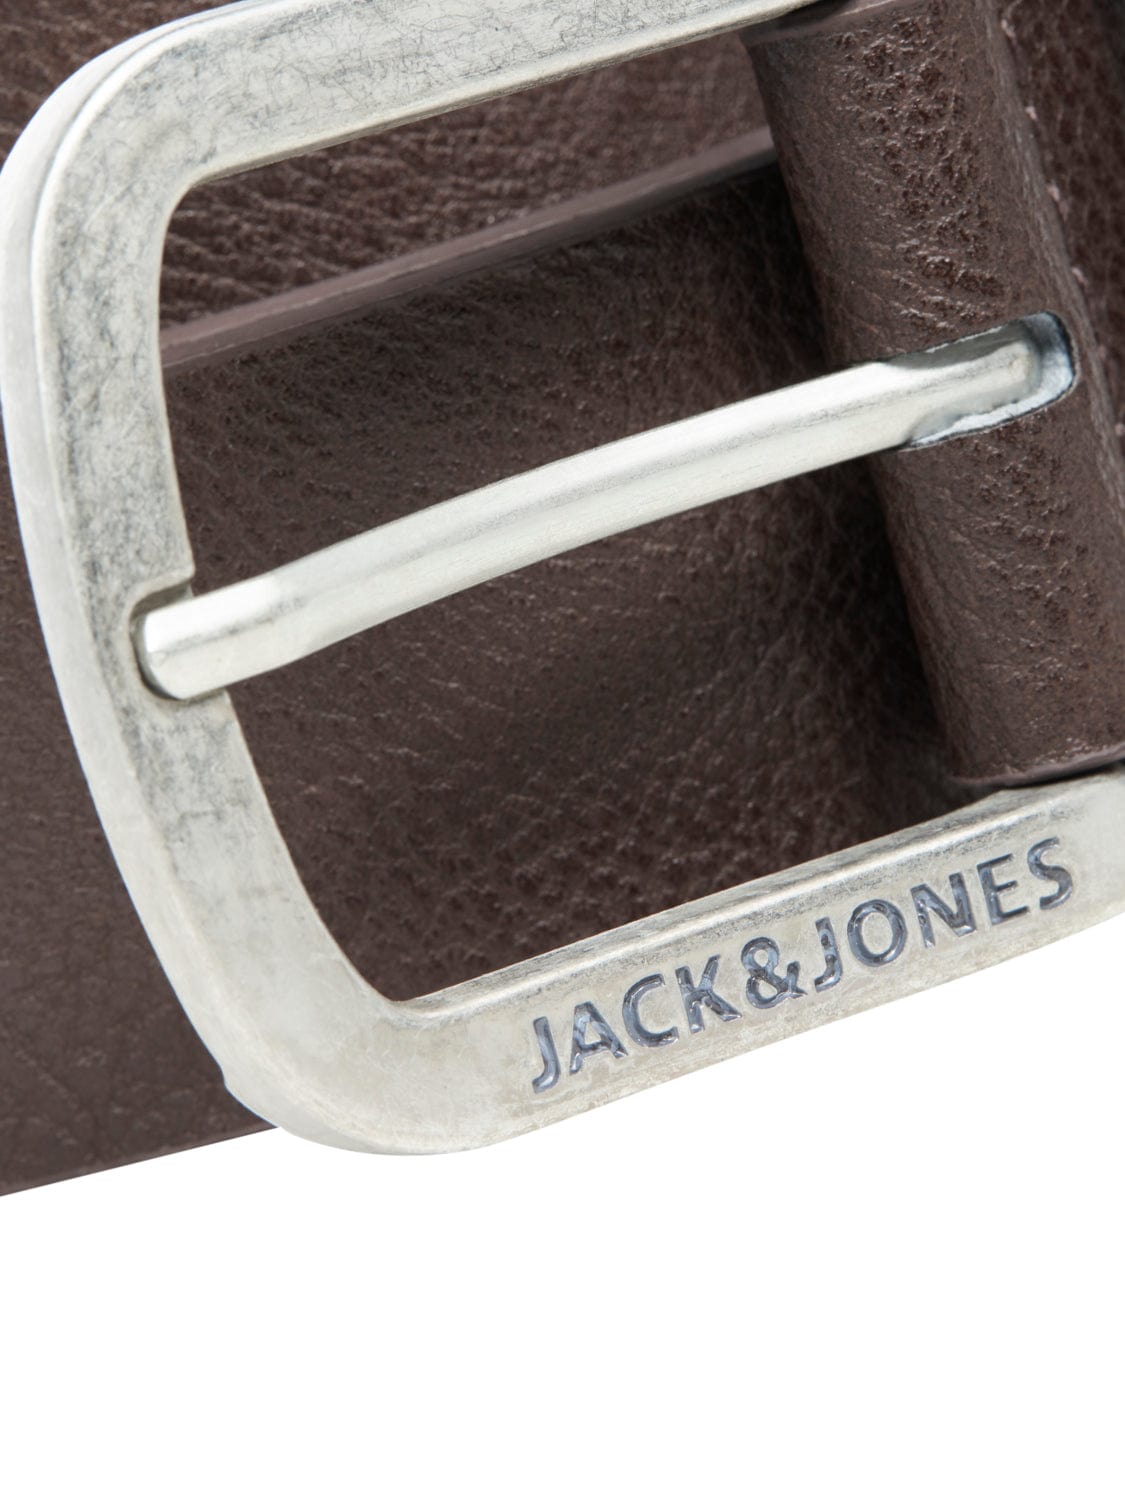 Cinturón con logo marrón con hebilla metálica -HARRY